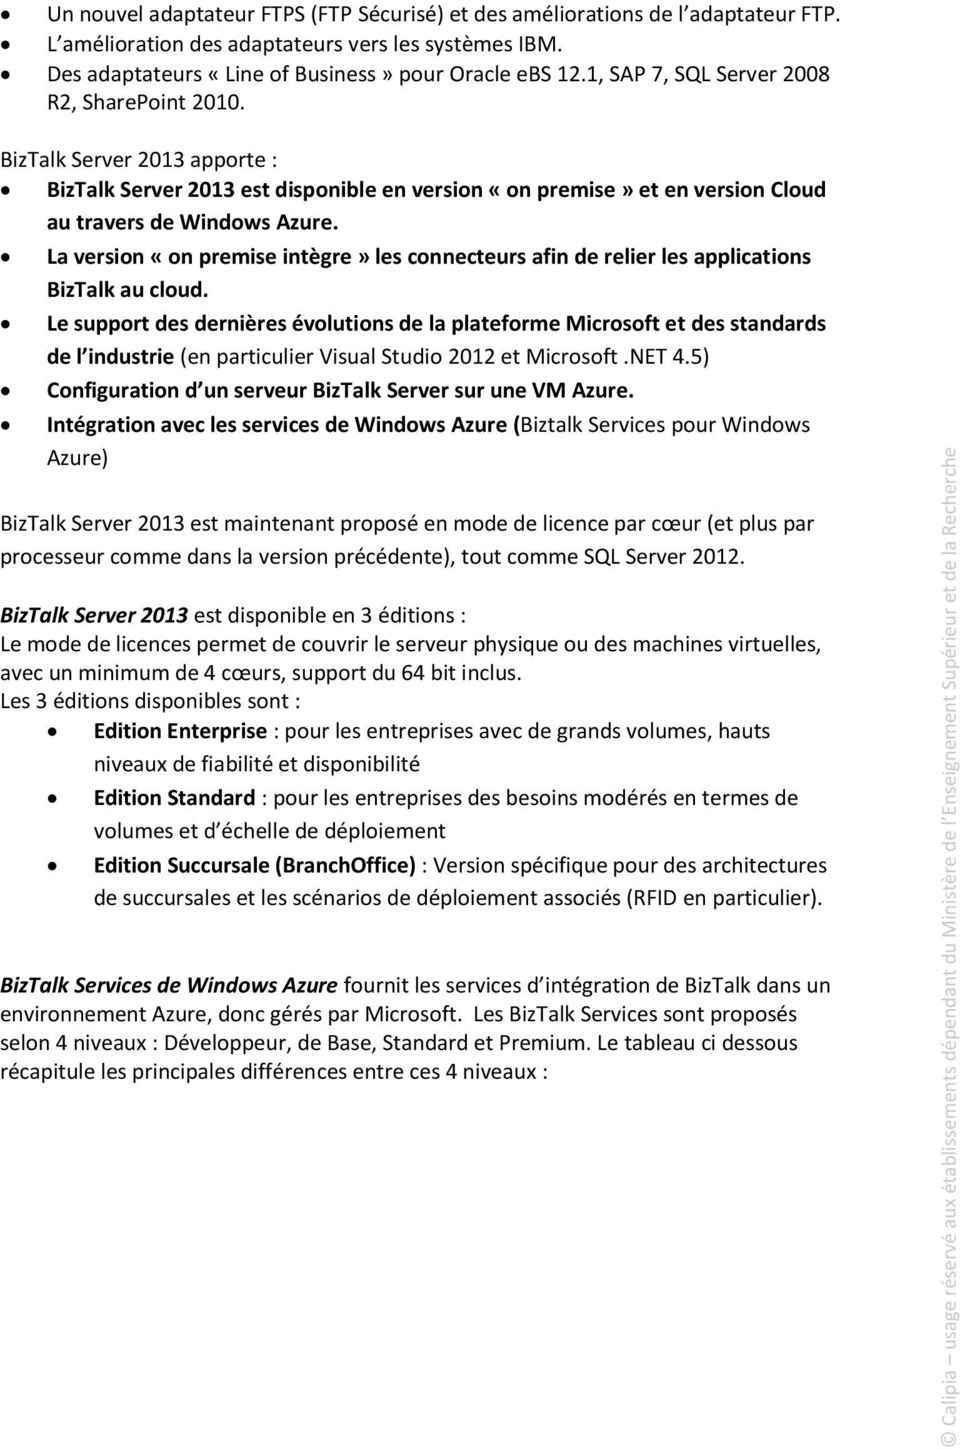 BizTalk Server 2013 apporte : BizTalk Server 2013 est disponible en version «on premise» et en version Cloud au travers de Windows Azure.